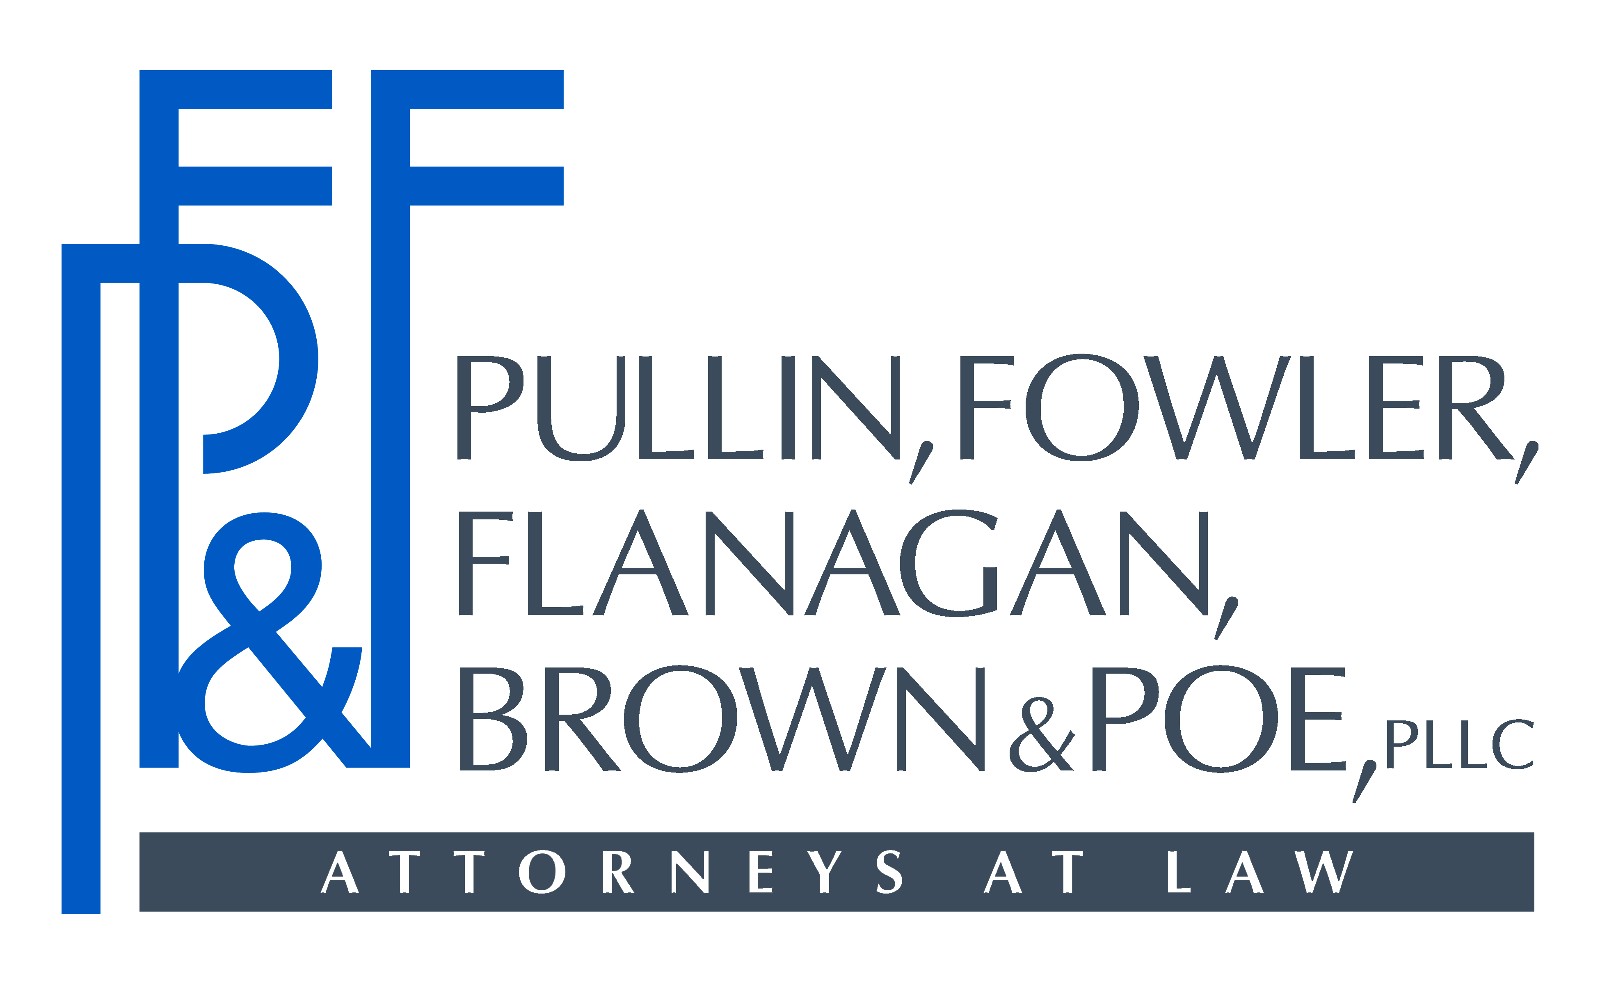 Pullin, Fowler, Flanagan, Brown & Poe, LLC logo